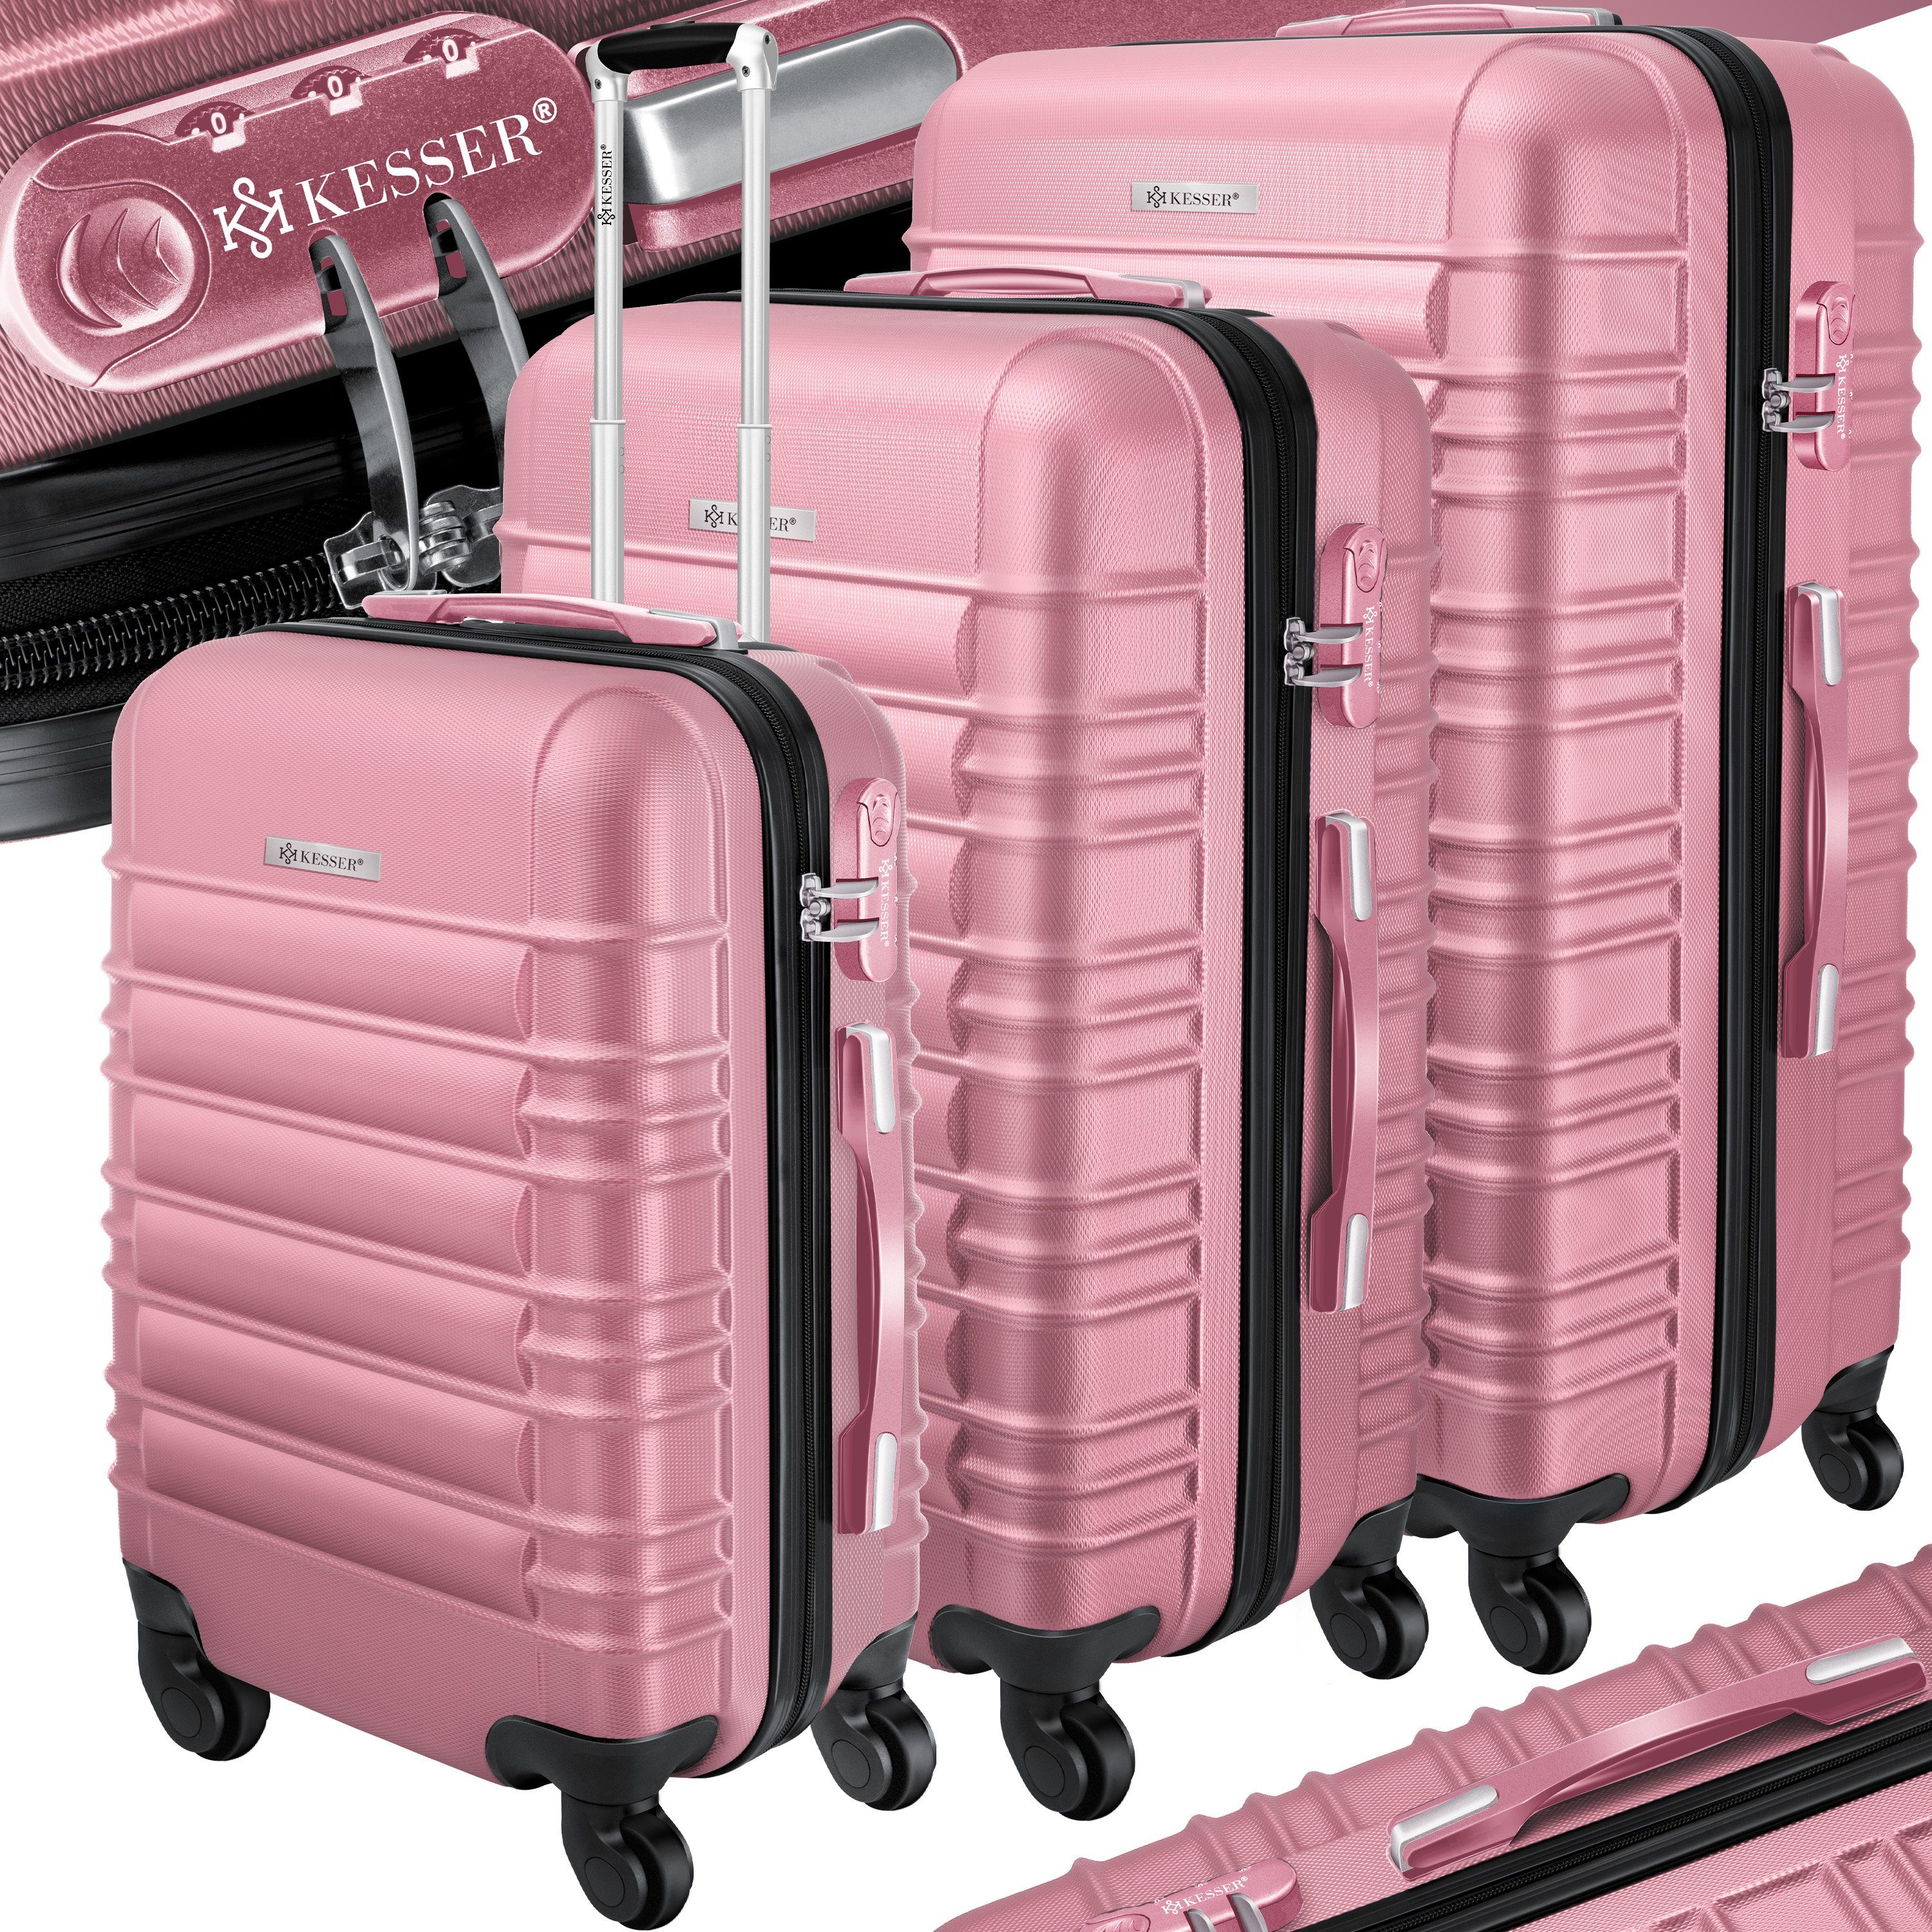 KESSER Kofferset, 4 Rollen, (3 tlg), 3tlg. Hartschalenkofferset Hartschalenkoffer Reisekoffer Set rosa